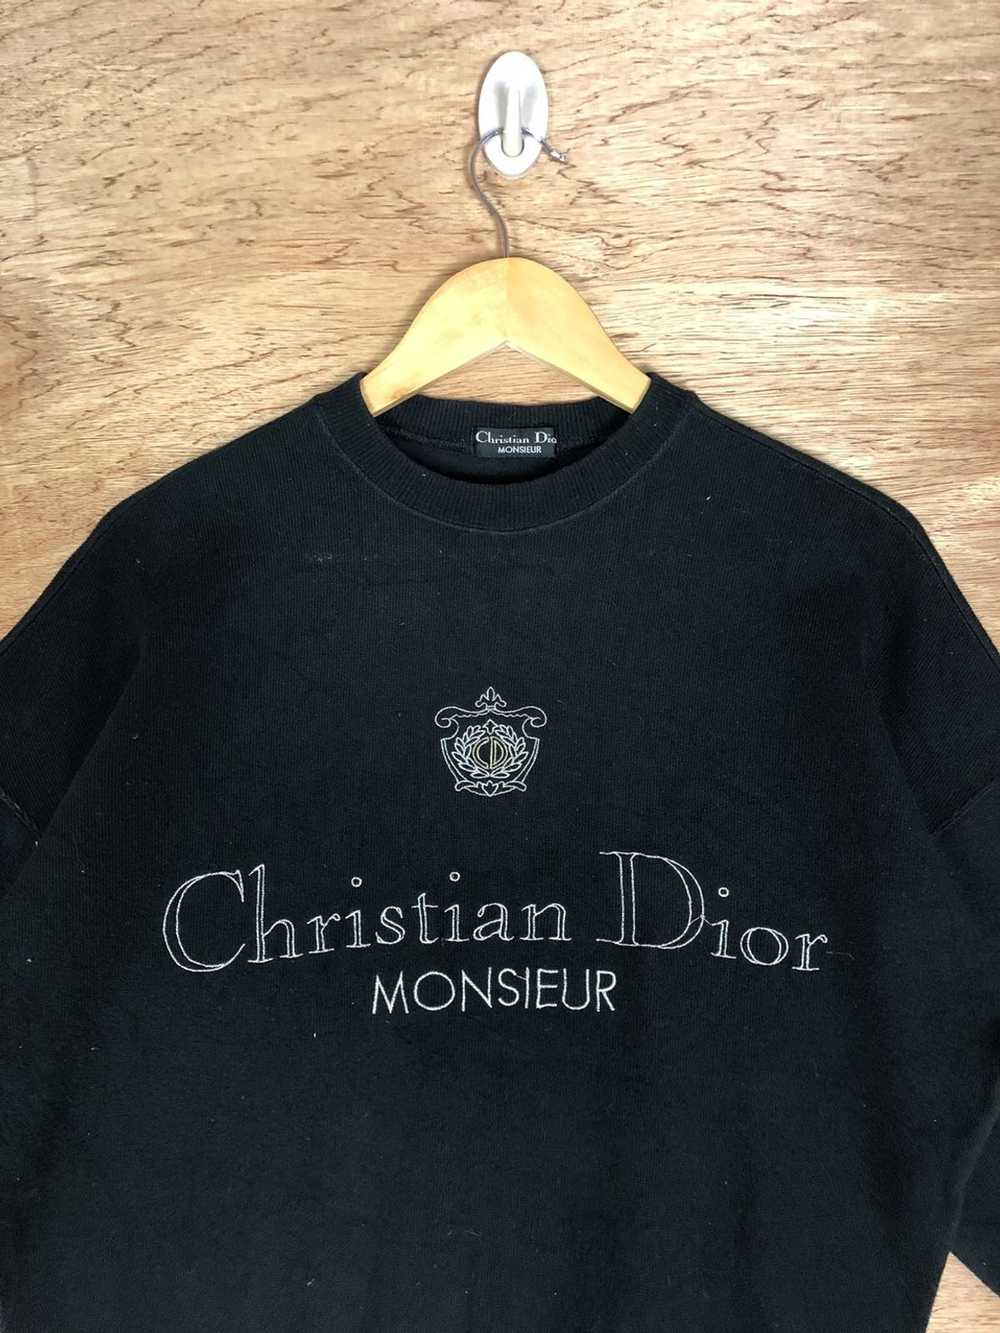 Christian Dior Monsieur Vintage Christian Dior Sp… - image 4